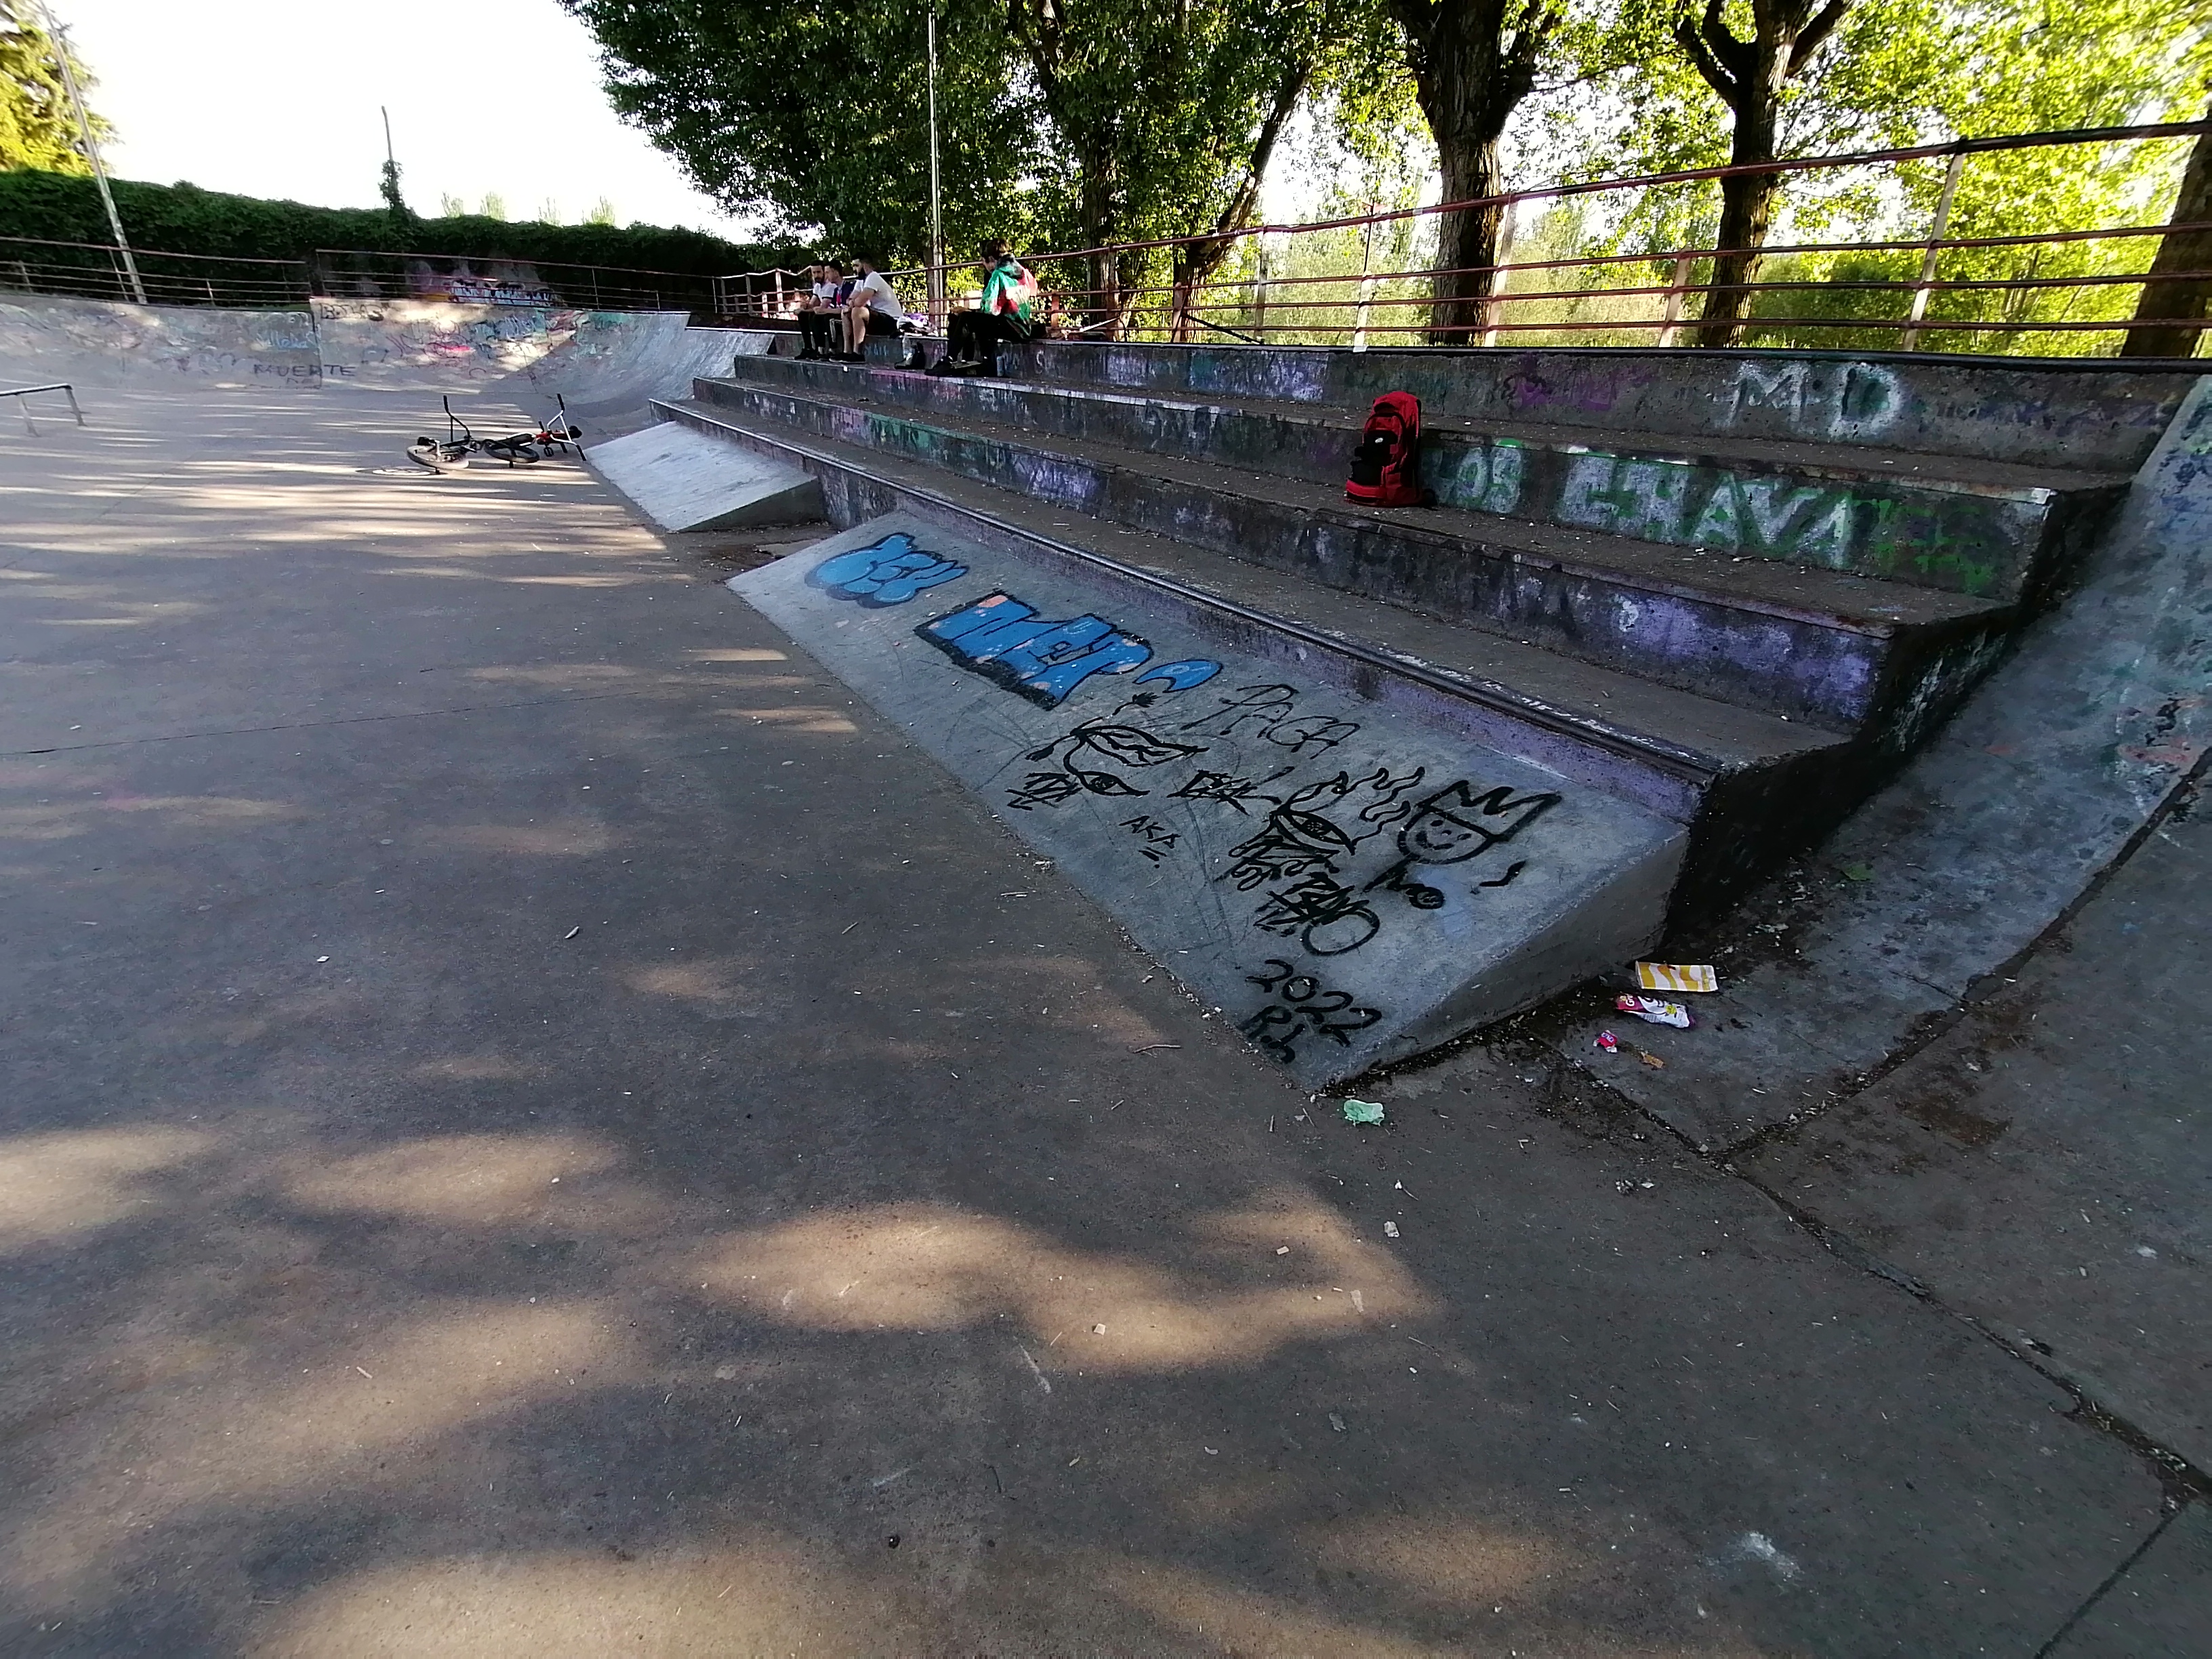 León skatepark